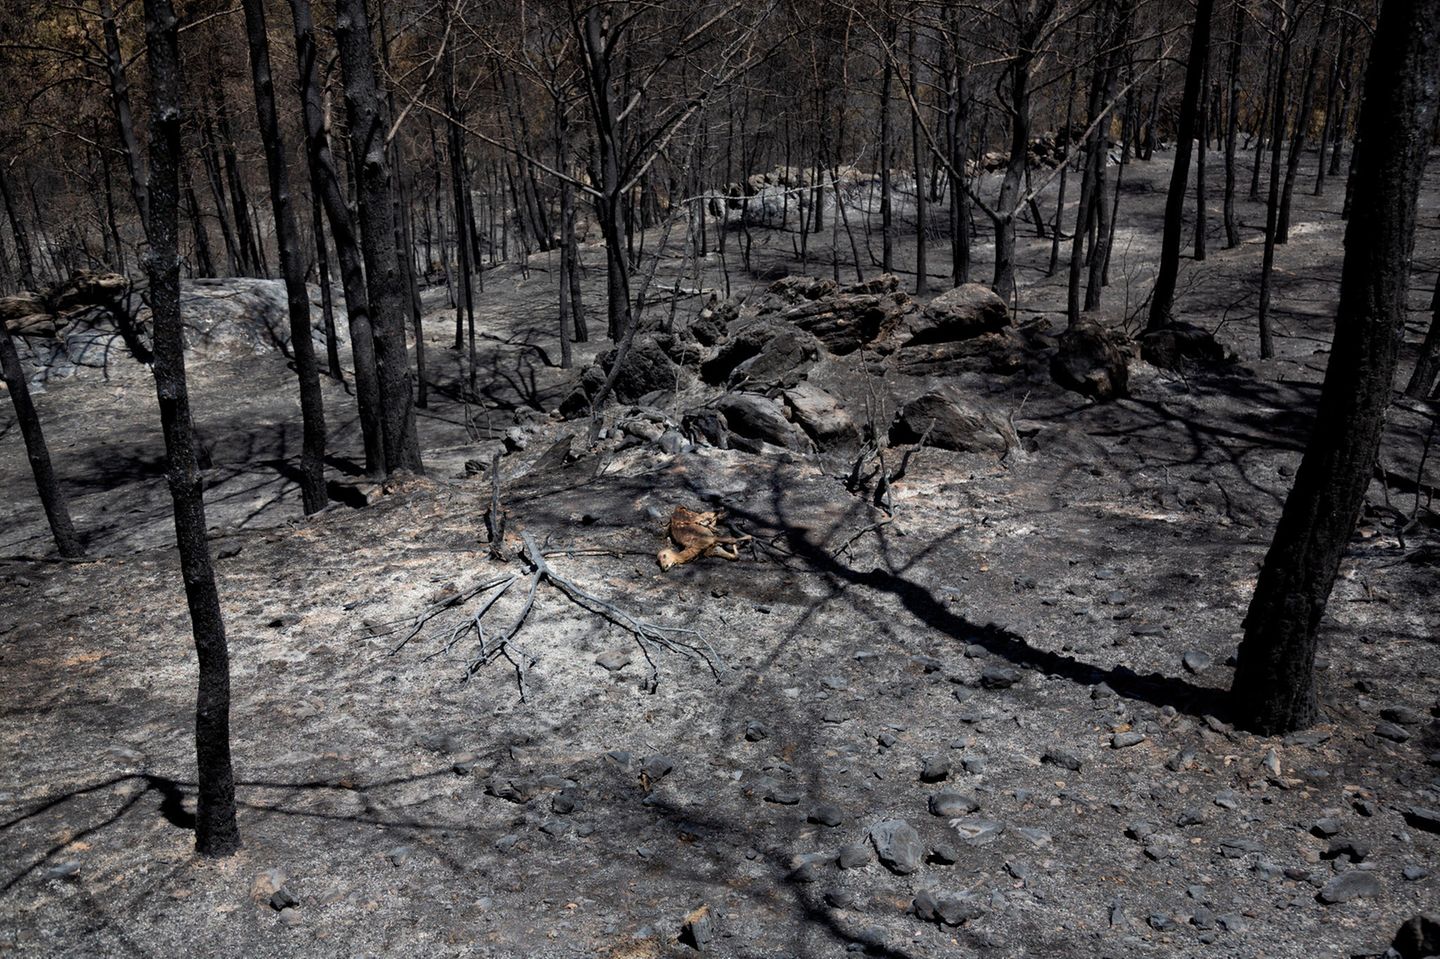 Ein junges Dama-Dama-Weibchen liegt tot auf dem verbrannten Waldboden der Insel Rhodos